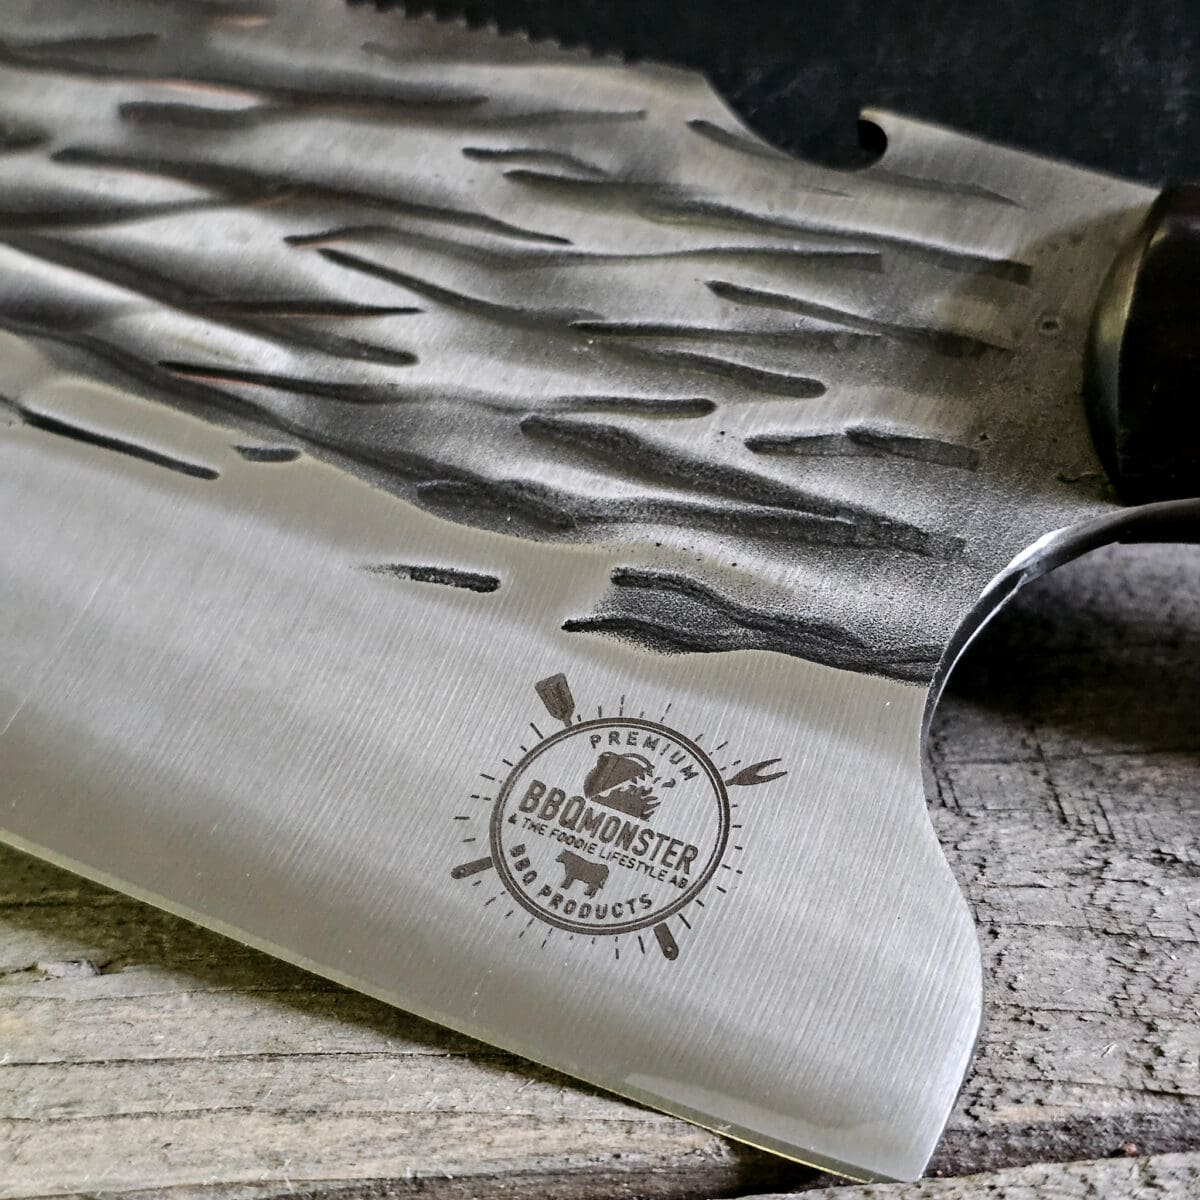 Kökskniv / Cleaver "Fire #7" 29cm - grovt kolstål med fina detaljer och galet vass - med ölöppnare på ovansidan av bladet - säljs för det tredubbla på andra sidor! Söker du en serie av välarbetade och lättskötta kockknivar? Ta en kik på BBQmonsters egna serie knivar! Samtliga knivar i serien kommer i en svart presentförpackning med BBQmonsters sigill "Make BBQ great again" tryckt på locket. Knivarna från BBQmonster har även BBQmonsters logo ingraverad på bladet. Vi sätter bara vår logo på prylar som vi verkligen tycker om - detta är en sådan. Introduktionspris - passa på! En perfekt till grillnörden, en present till pappa på farsdag eller till dig själv helt enkelt! Denna modell av kökskniv är av typen som på många sidor benämns som en "serbisk kockkniv". Hur väl den beskrivningen stämmer låter vi var osagt men det man kan säga om denna kniv är att den perfekt när du skall skapa snittytor som är jämntjocka, detta då bladet är imponerande 10cm högt.  Att typen av kniv blivit populär beror sannolikt på den smidiga hantering att plocka upp hackad lök, koriander och annat med ETT svep - bladet är som "skyffel". Bladet på denna Fire #7 är grovt, tungt, stabilt, lättskött och bladet har en härlig yta som påminner om just "fire" - lågor. Tillsammans allts som allt gör detta kniven rejält "intstagramvänlig" och photogenique. På ovansidan av bladet sitter en ölöppnare så du slipper slita på snusdosan. (Vill du hellre ha en ölöppnare uppskruvad på väggen så ta en kik på denna Bulldog i gjutjärn!) Bladet är genomgående och avslutas med handtaget som är av polerat och lackat ädelträ och tre nitar av mässing. Skaftet ger ett skönt grepp och är enkelt att rengöra. Handtaget passar både höger- och vänsterhänta.  Kolstål med blandning X50CrMoV15 Hårdhet 56° HRC vilket är ett relativt mjukt stål - något som gör att du själv enkelt kan hålla din kniv vass. Total längd: 29 cm Längd på bladet: 17 cm Längd på skaftet: 12 cm